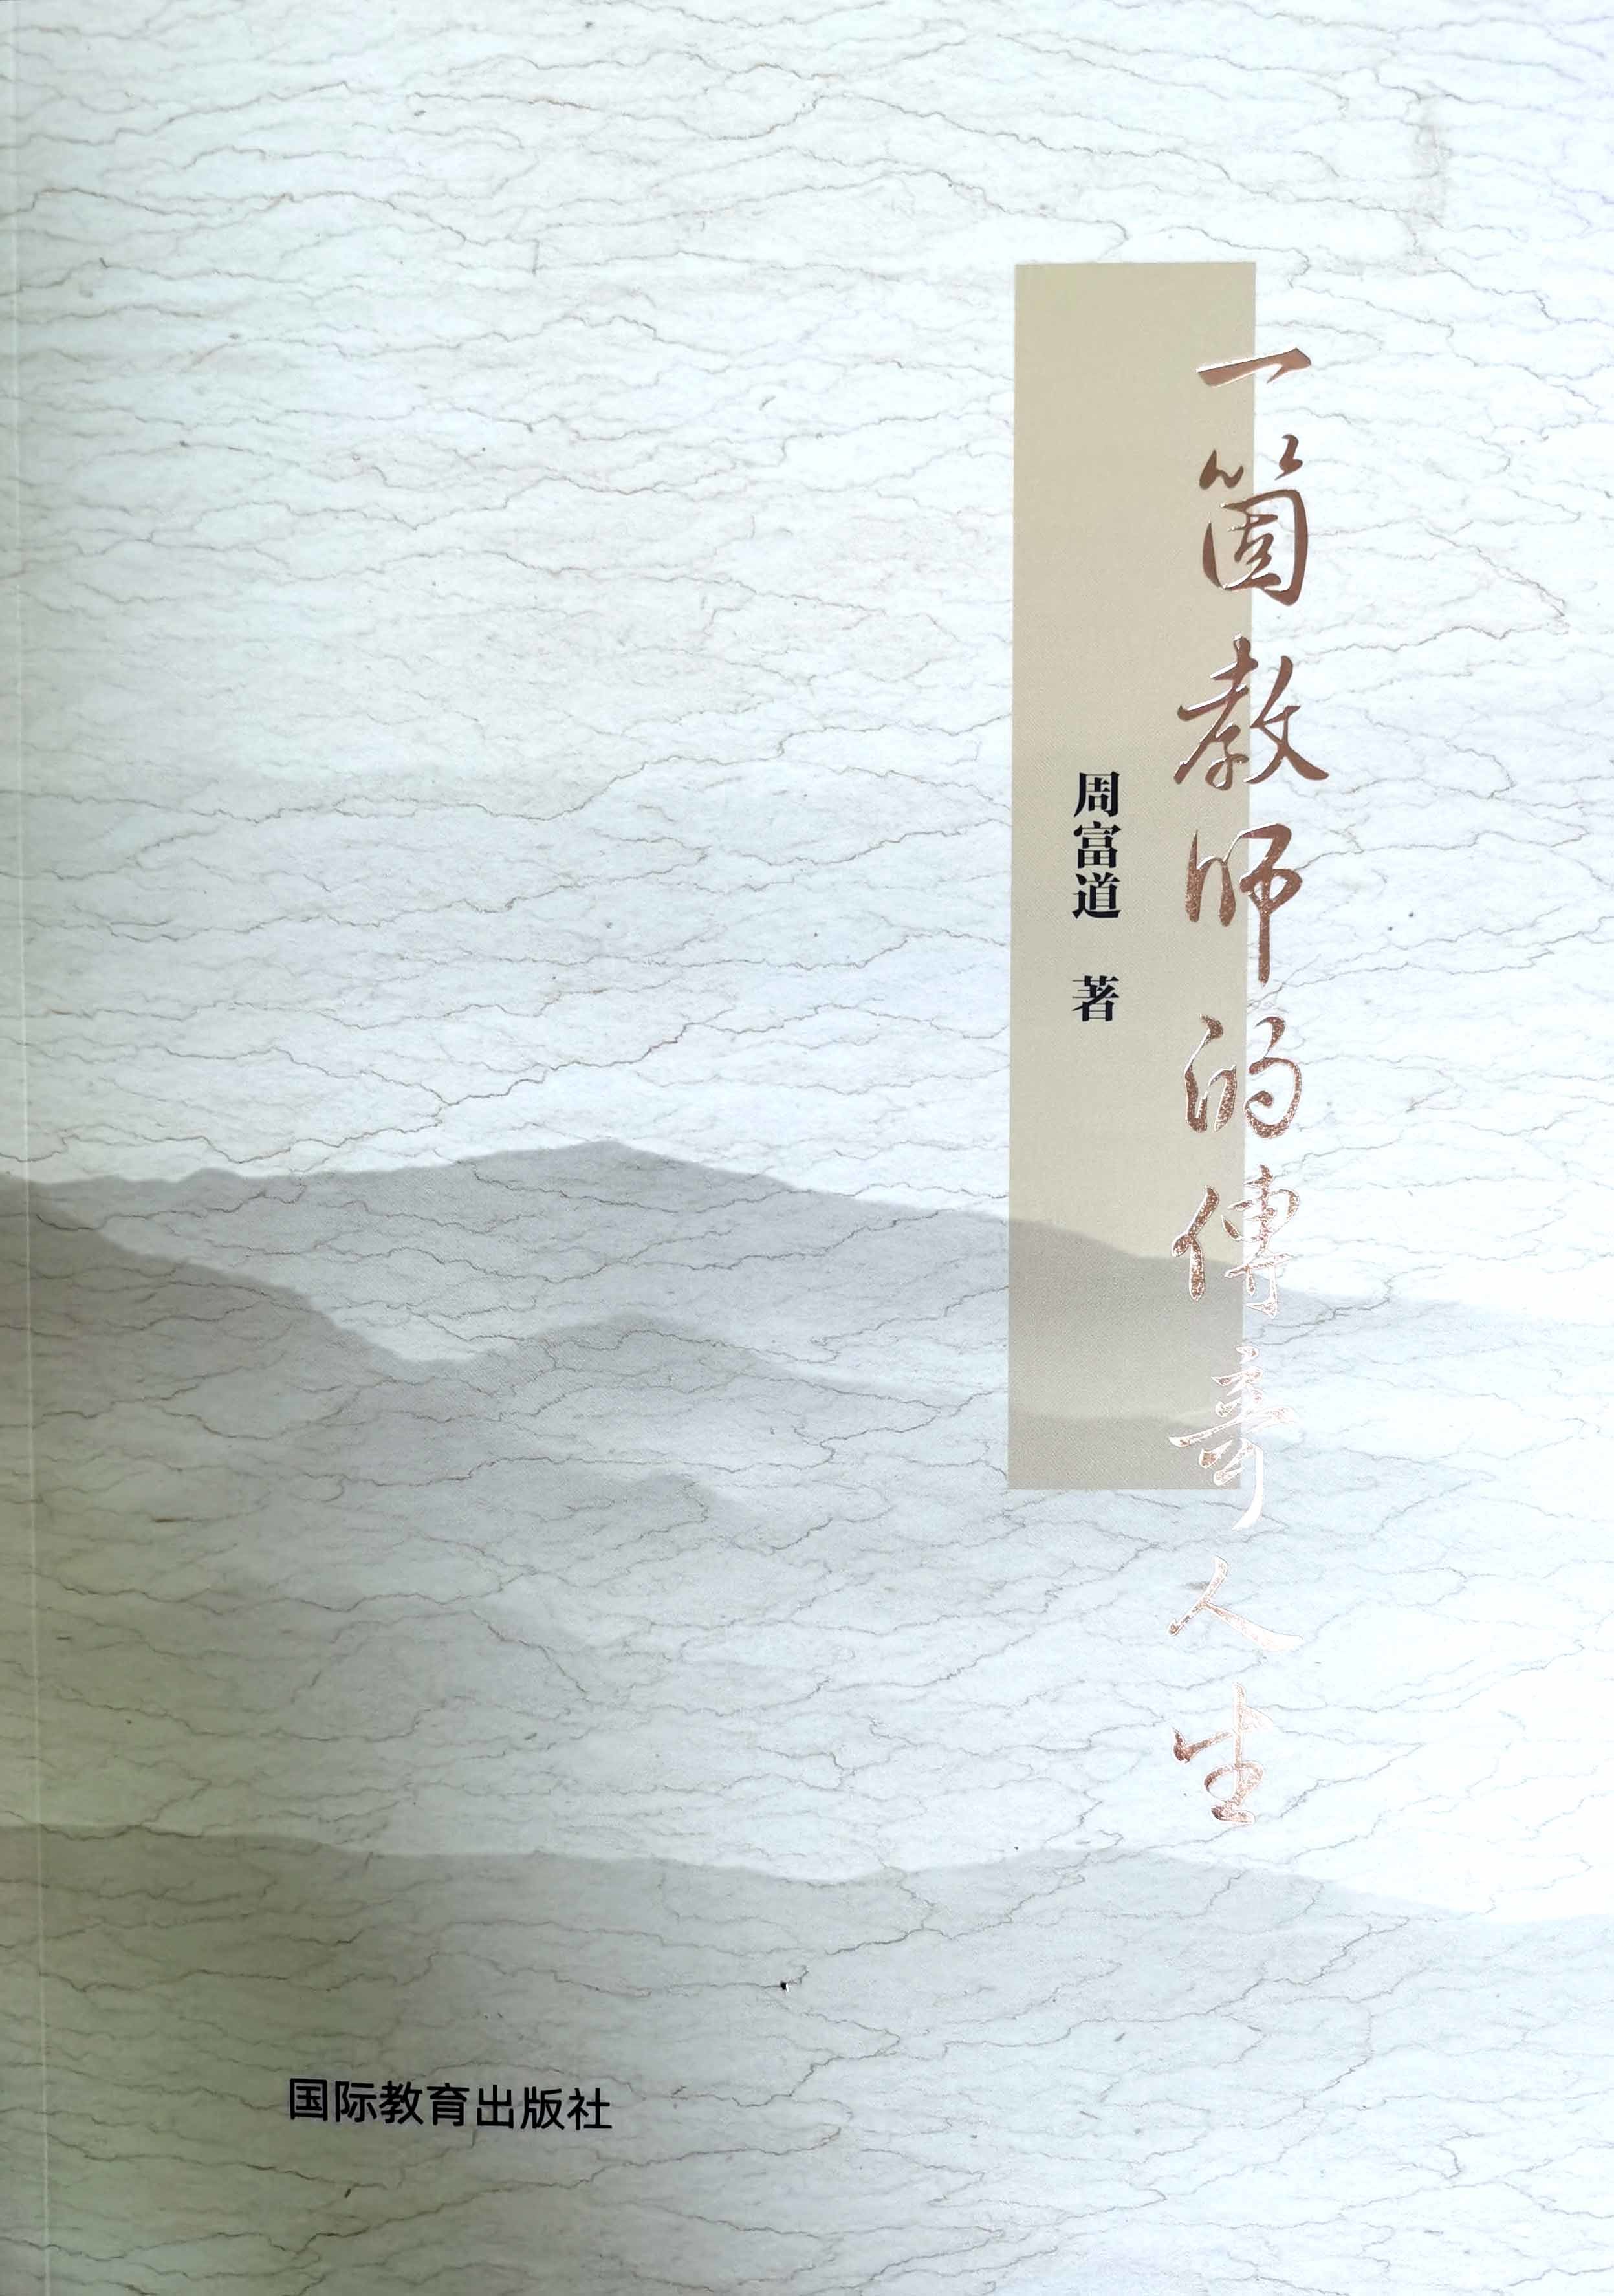 贾培基：以文立心铸师魂，贺周富道老师新书《一个教师的传奇人生》出版